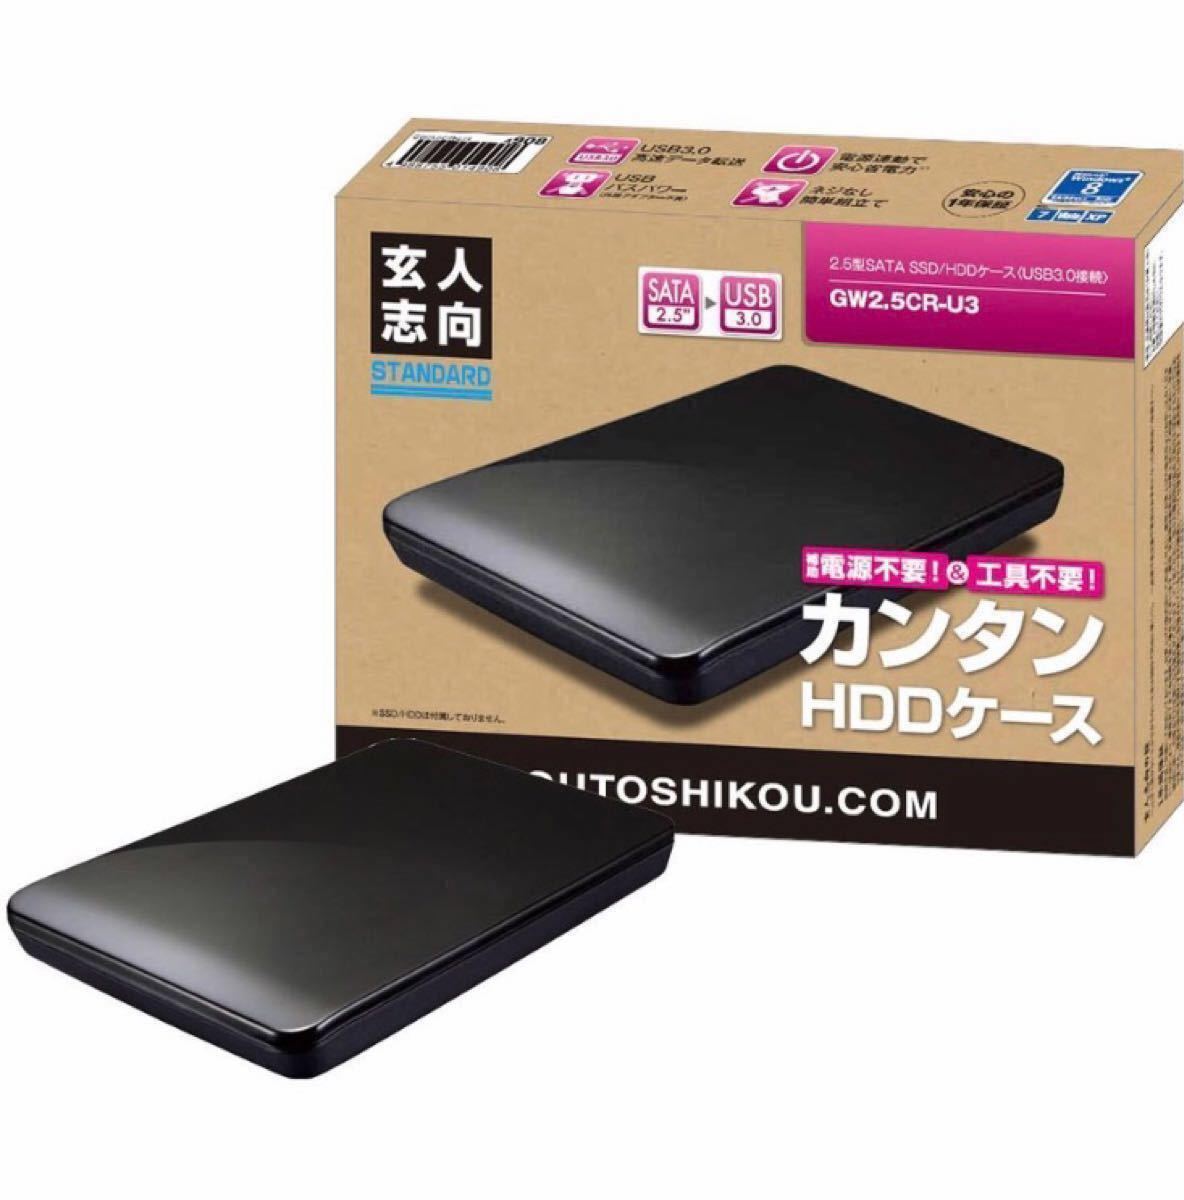 【ポータブル HDD 640GB】TOSHIBA MK6475GSX 640GB / 玄人志向 型名GW2.5CR-U3